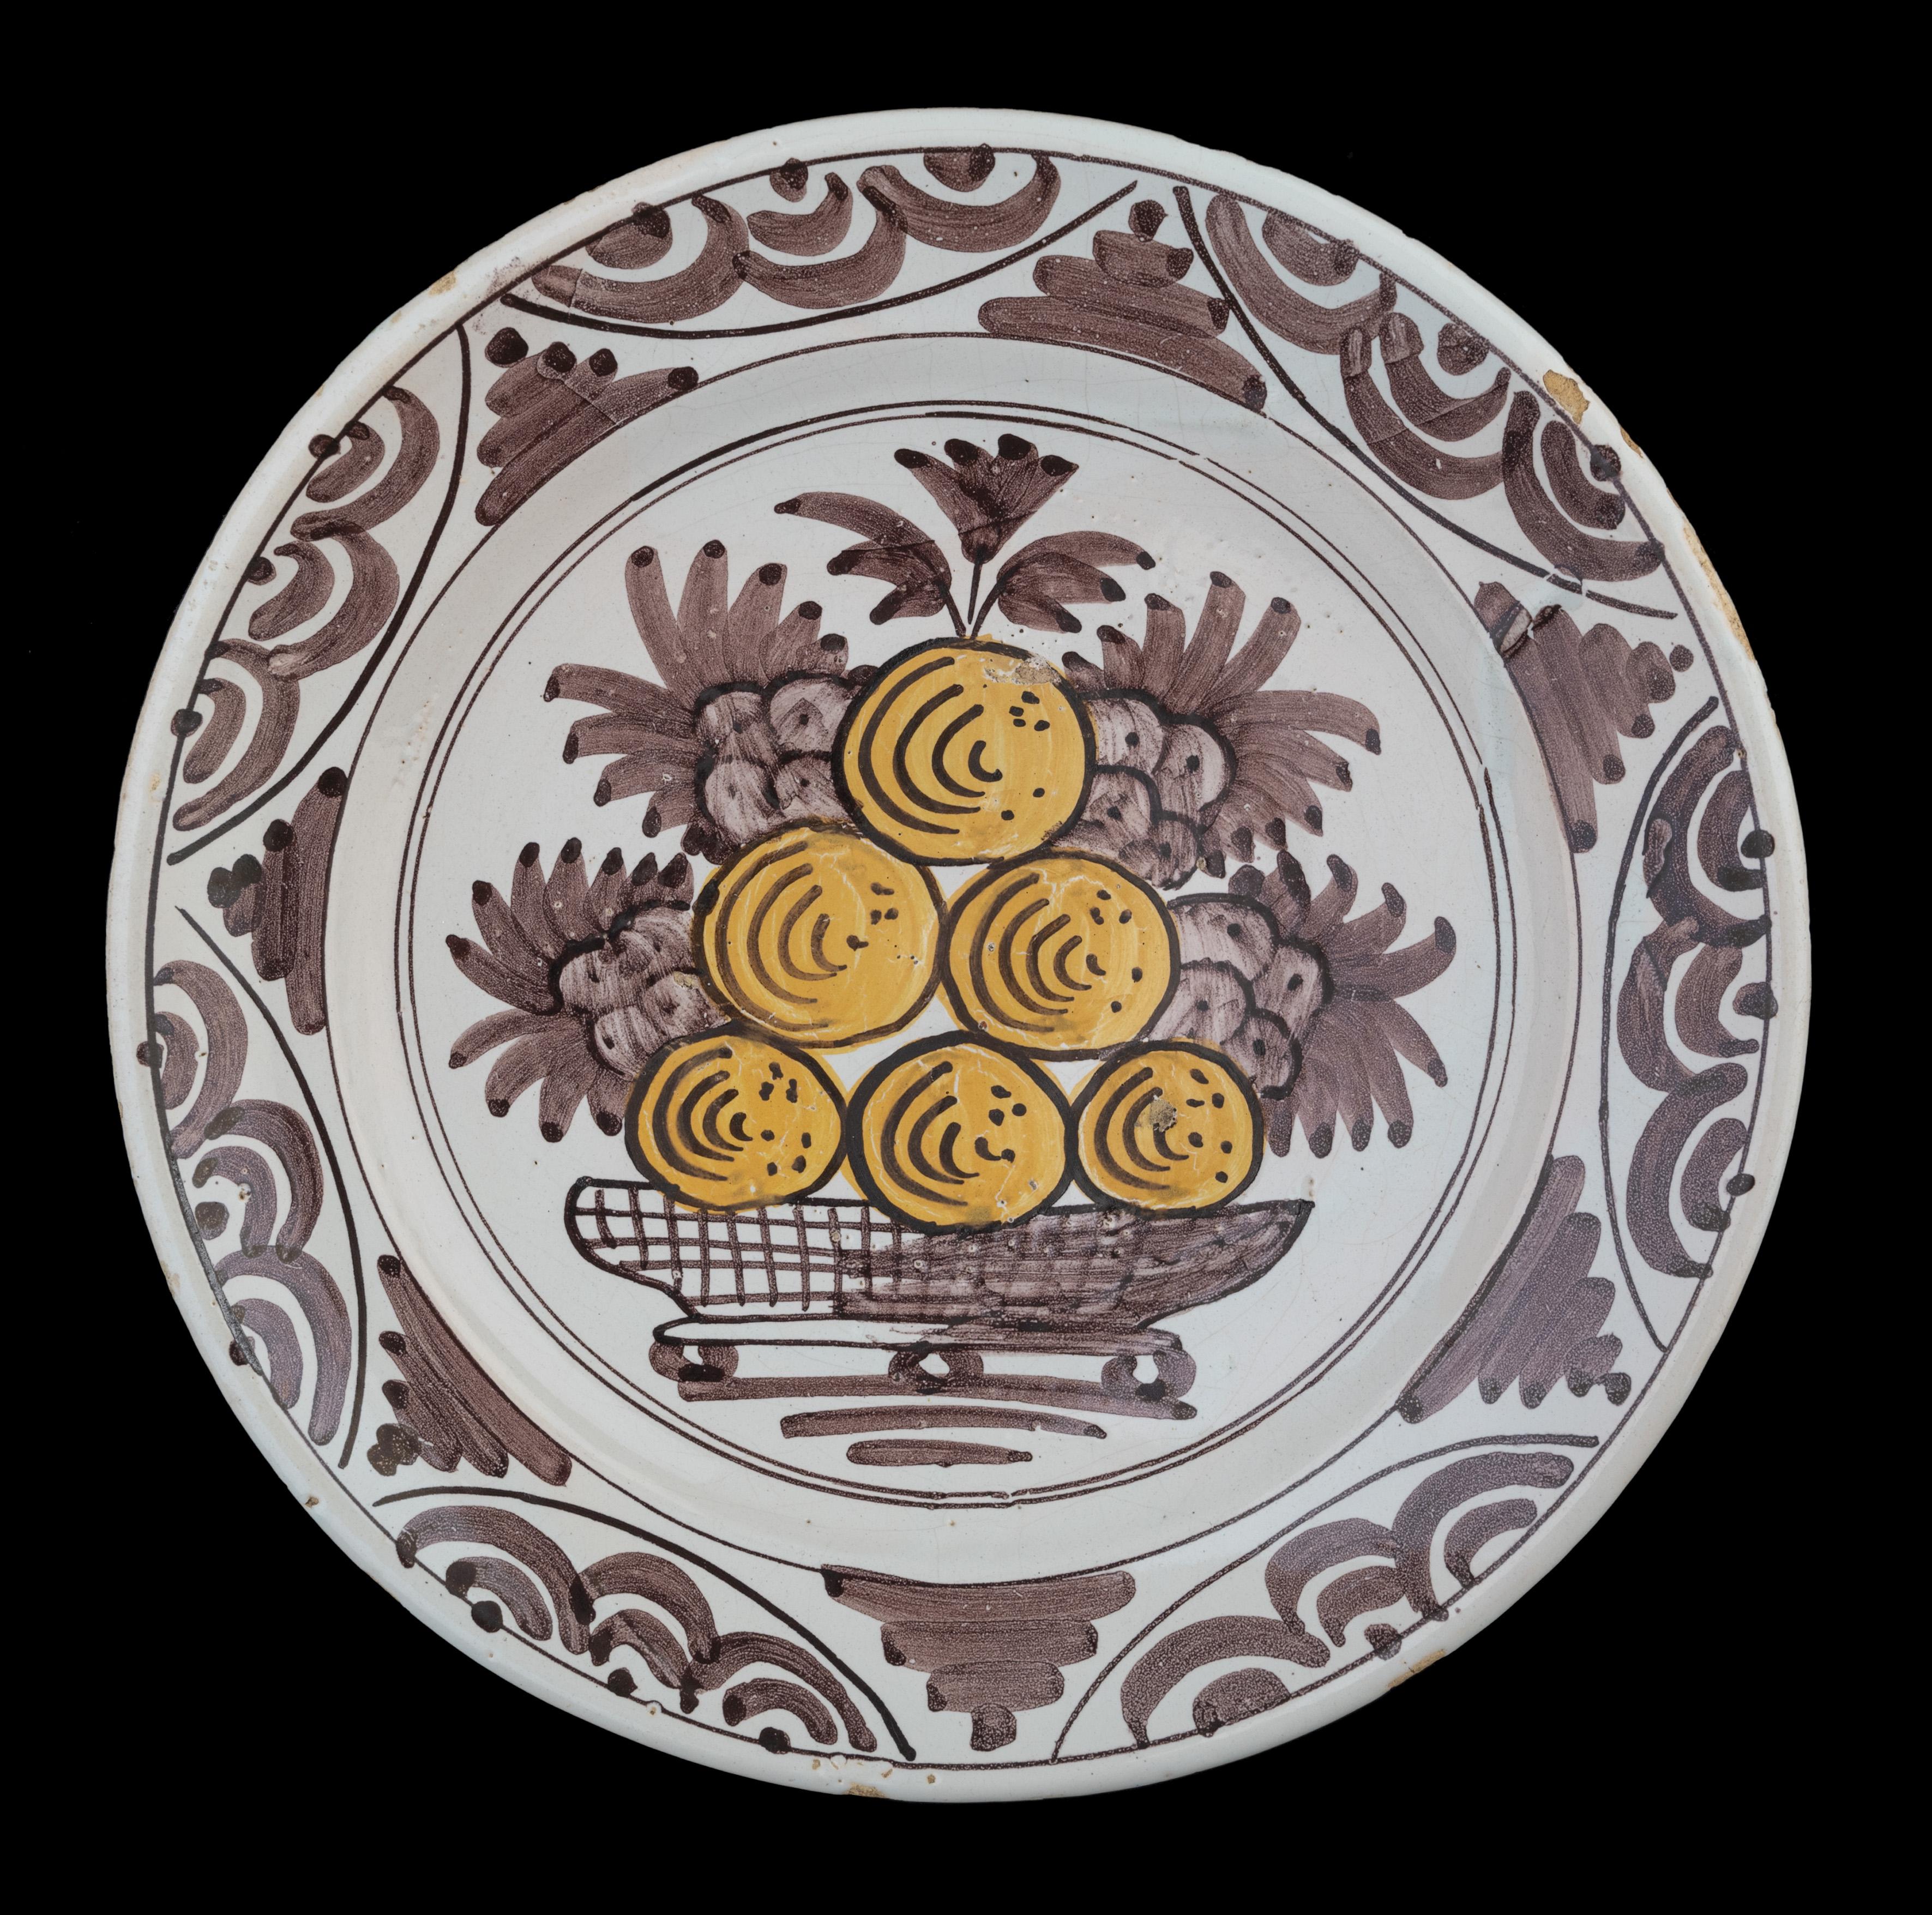 Plat avec fruits en violet et jaune Pays-Bas, 1660-1700.

Le plat, à rebord étalé et légèrement relevé, est peint en violet et jaune d'un décor fruitier de raisins et de pommes ou d'oranges, inscrit dans un double cercle. Le puits n'est pas peint.